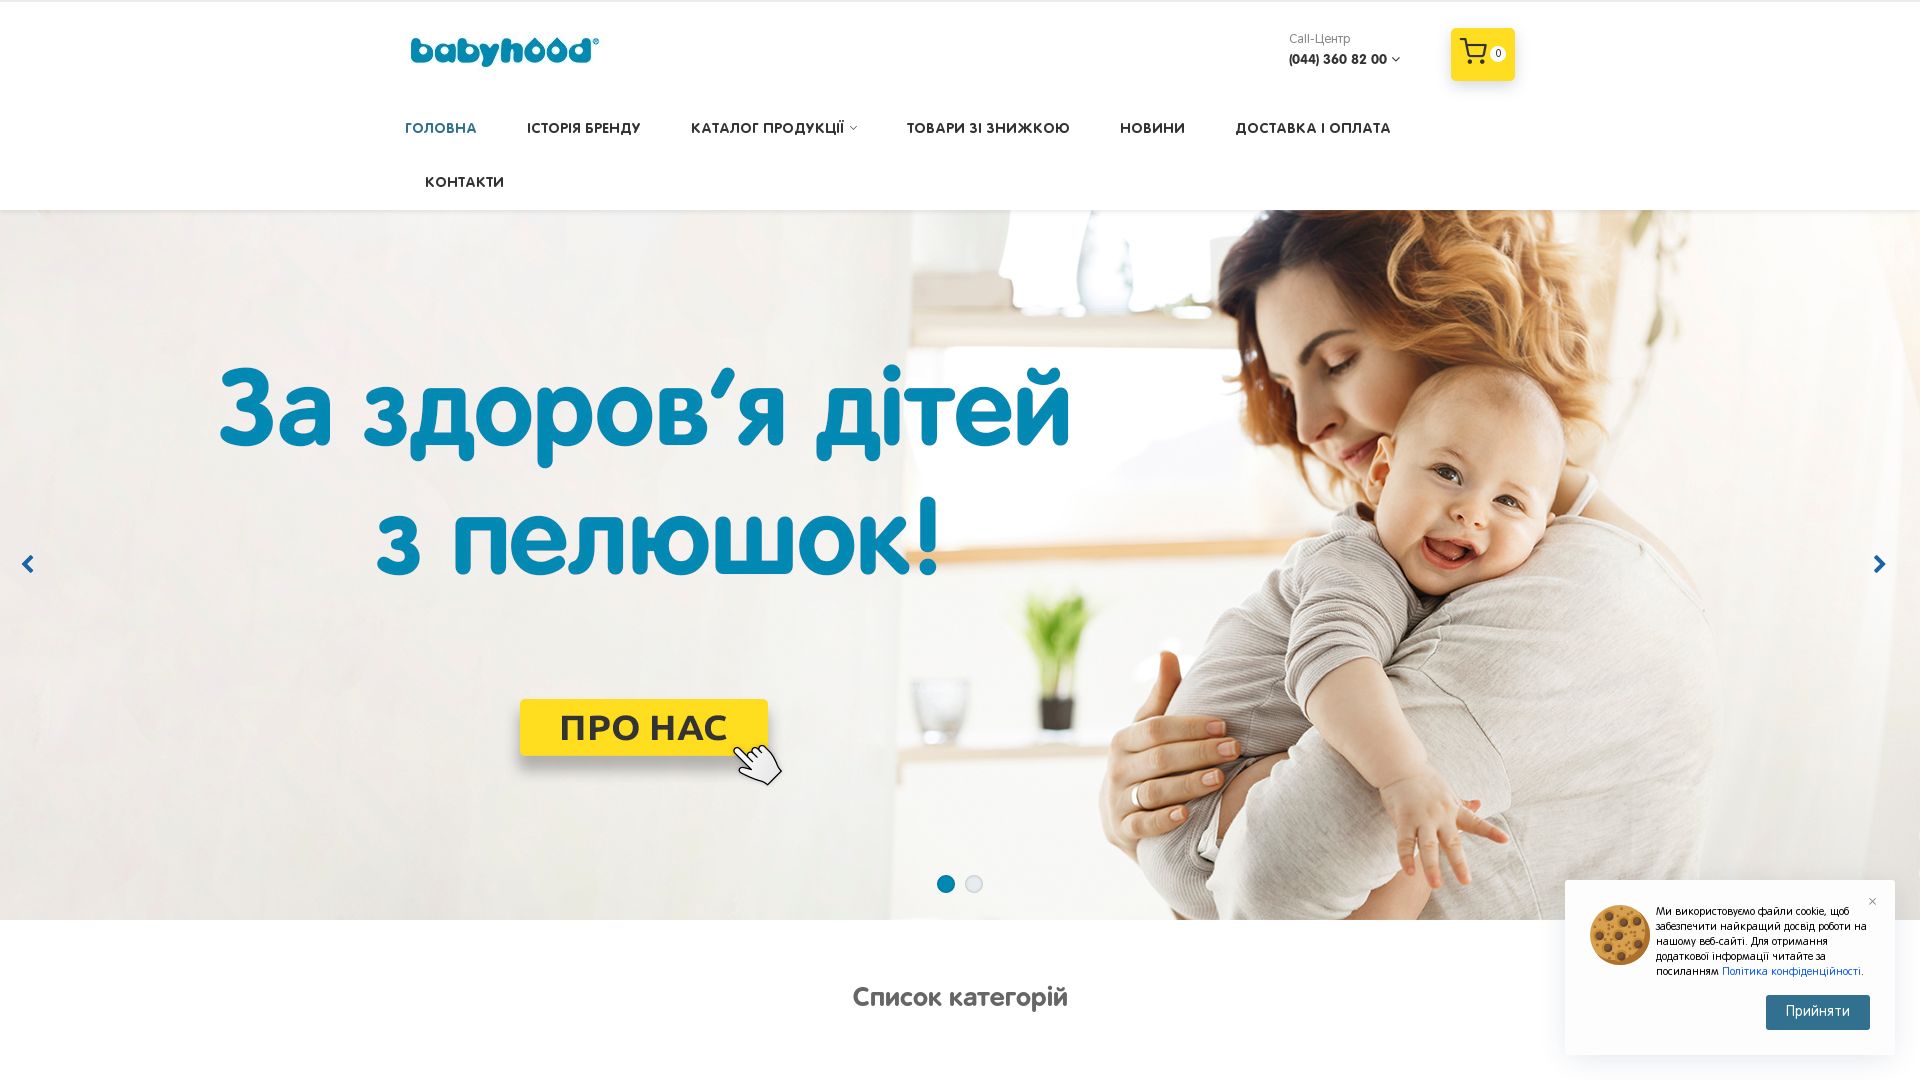 Website status babyhood.ua is   ONLINE